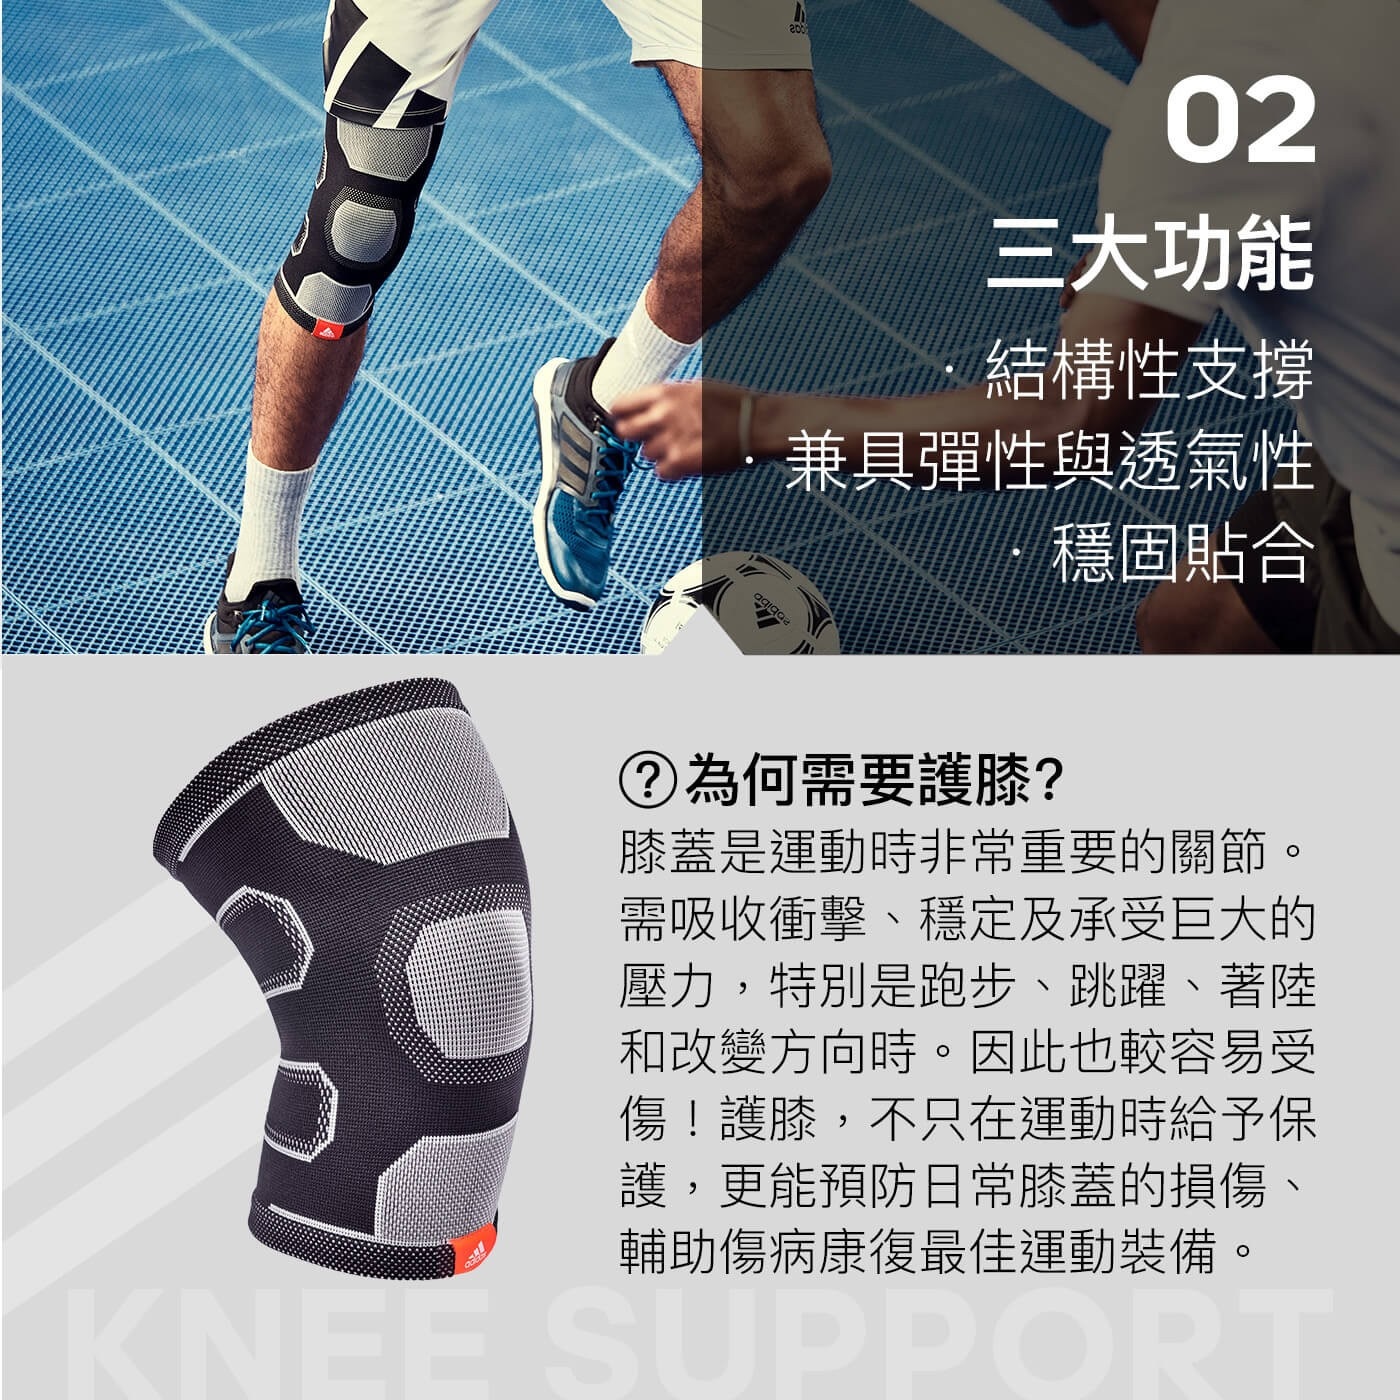 Adidas 踝關節用高性能護套 2入上下加厚袖口設計，穩固貼合